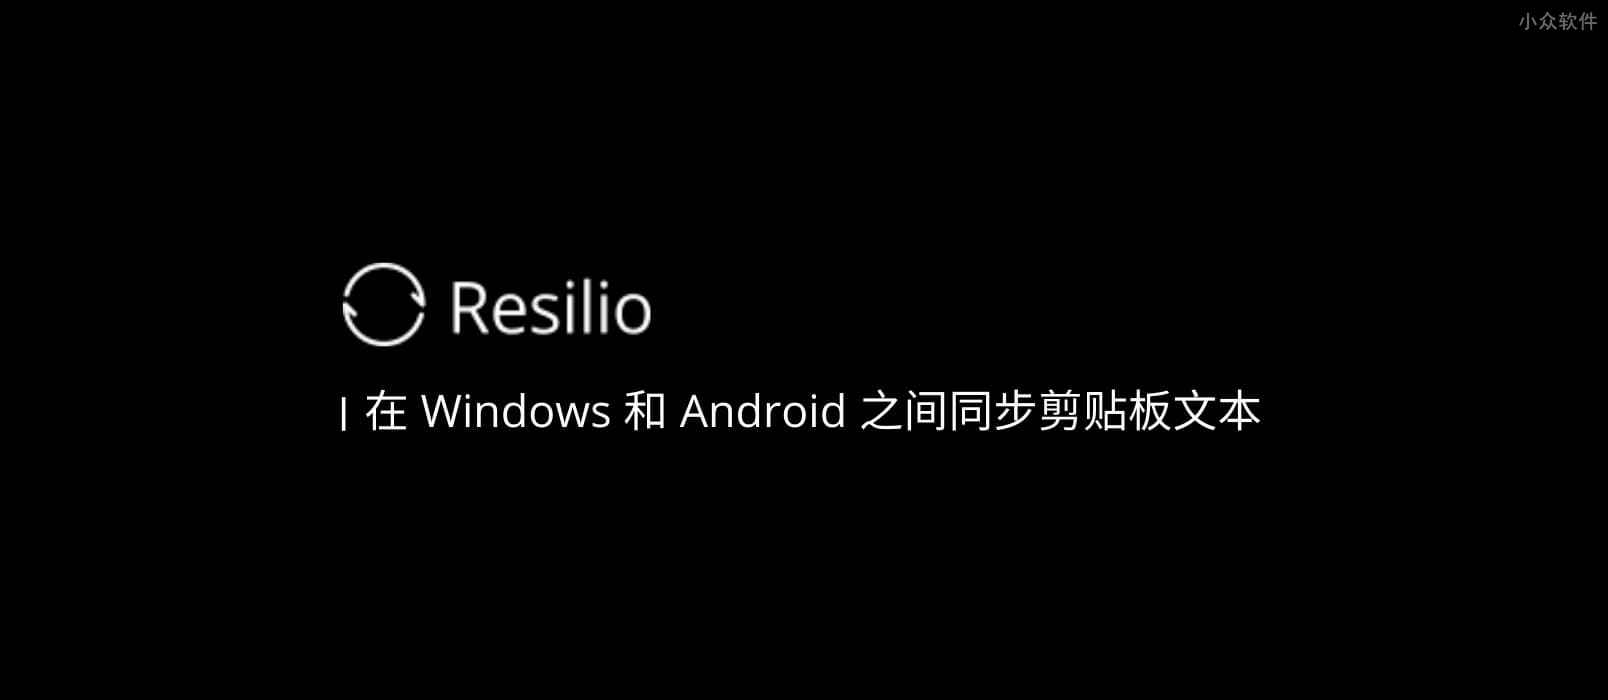 用 Resilio Sync 在 Windows 和 Android 之间同步剪贴板文本